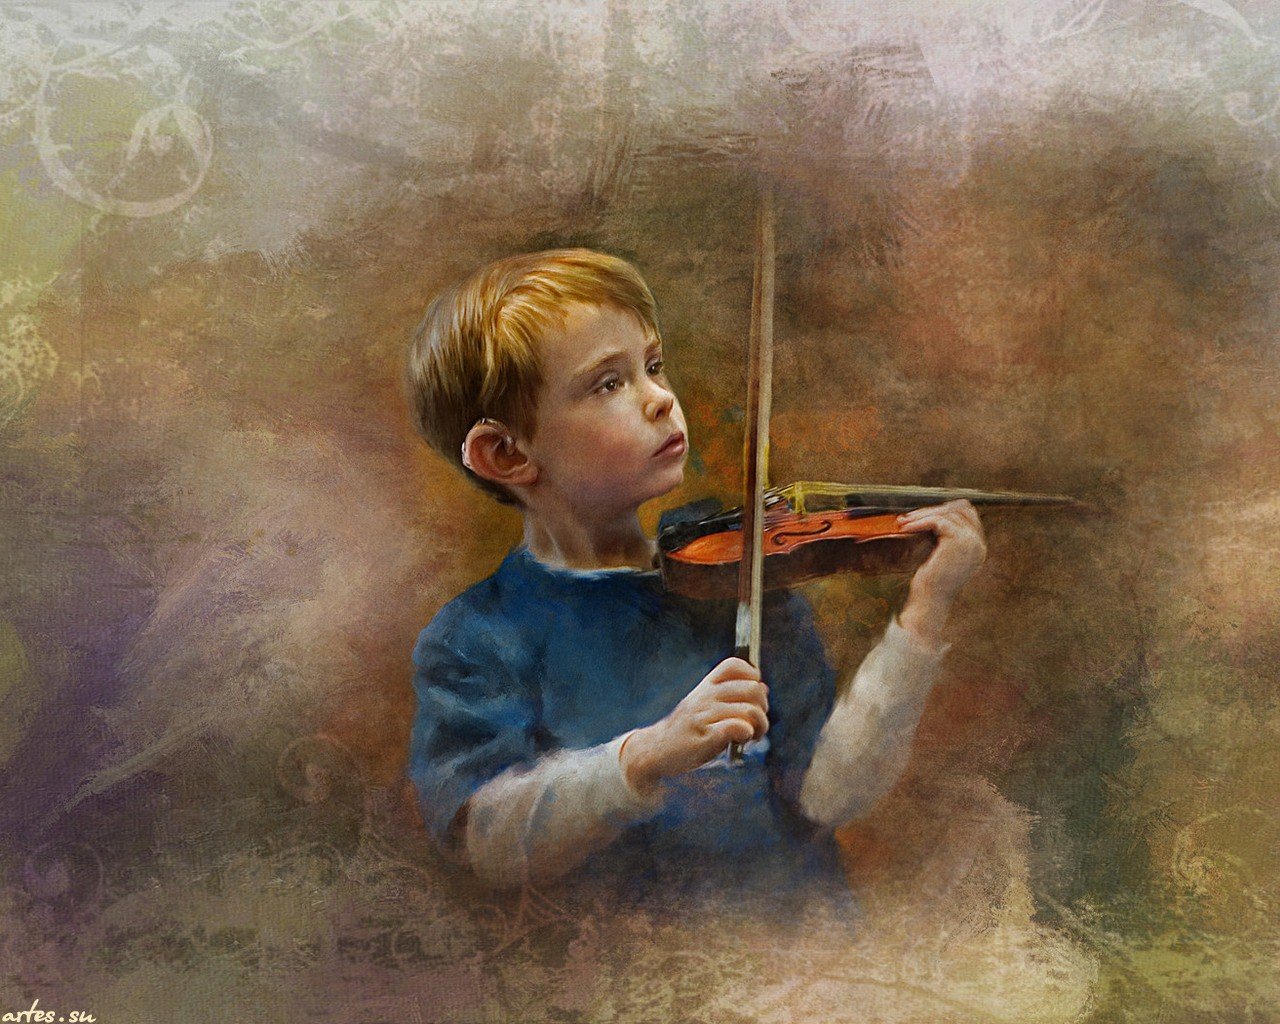 Скрипка глинки. Richard Ramsey скрипач. Мальчик со скрипкой.